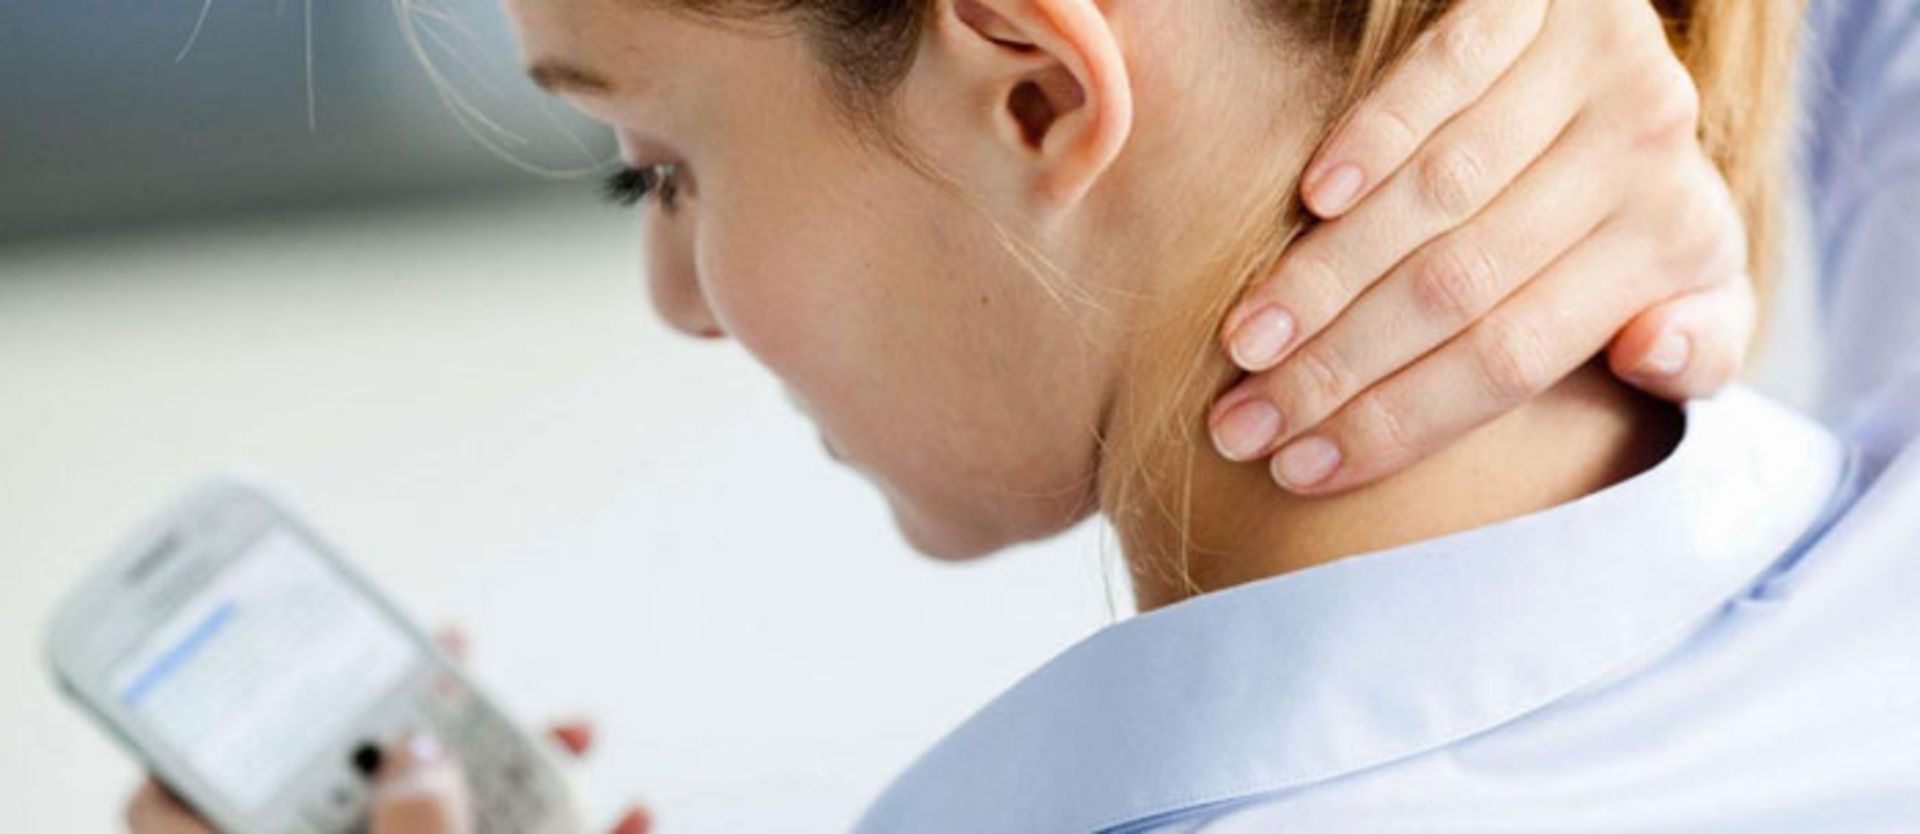 مرجع متخصصين ايران درد گردن / Tech neck